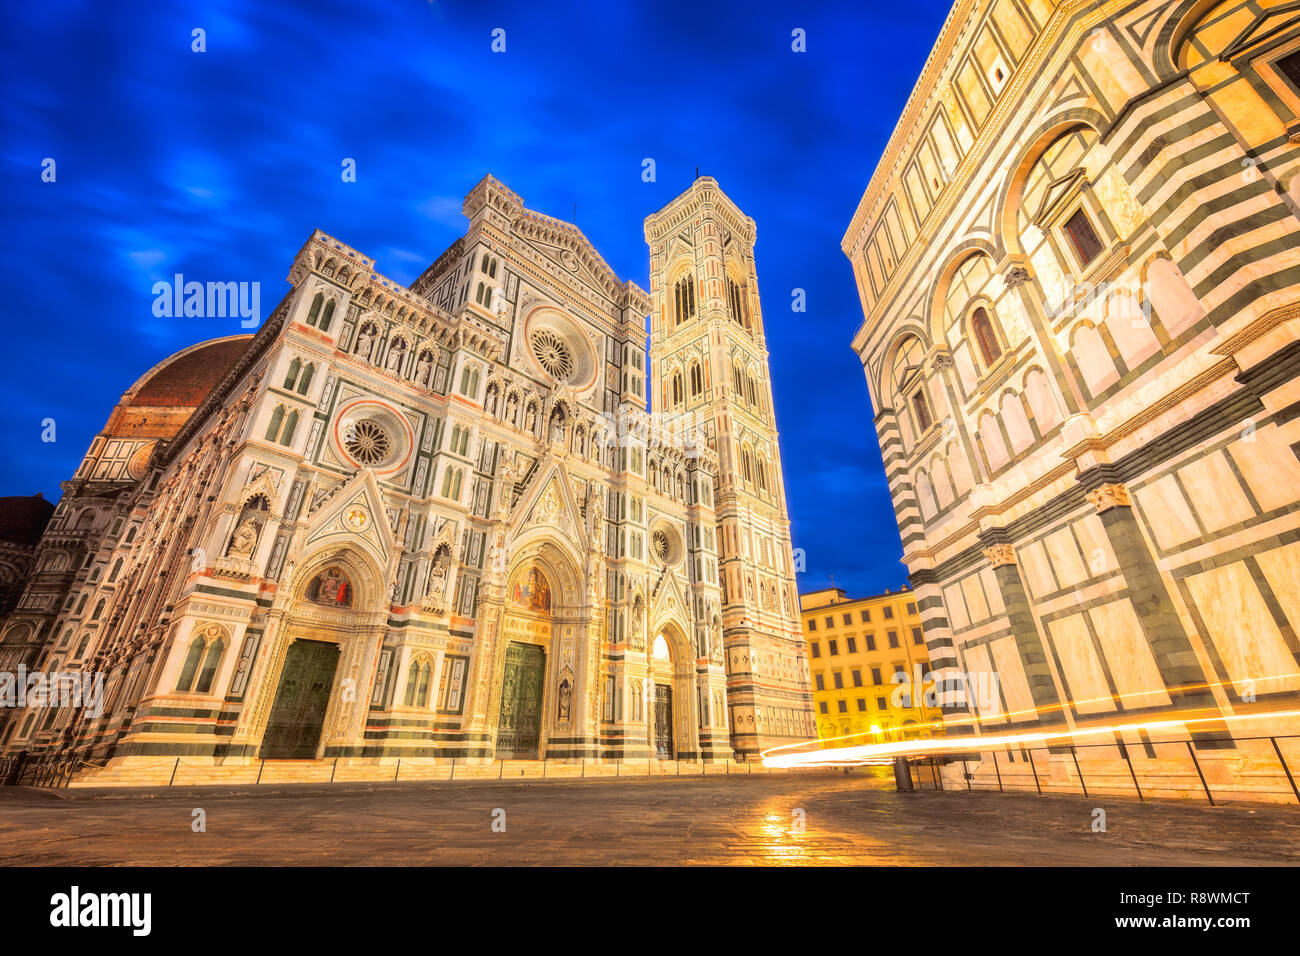 Cattedrale di Santa Maria del Fiore, Florence, Italy Stock Photo